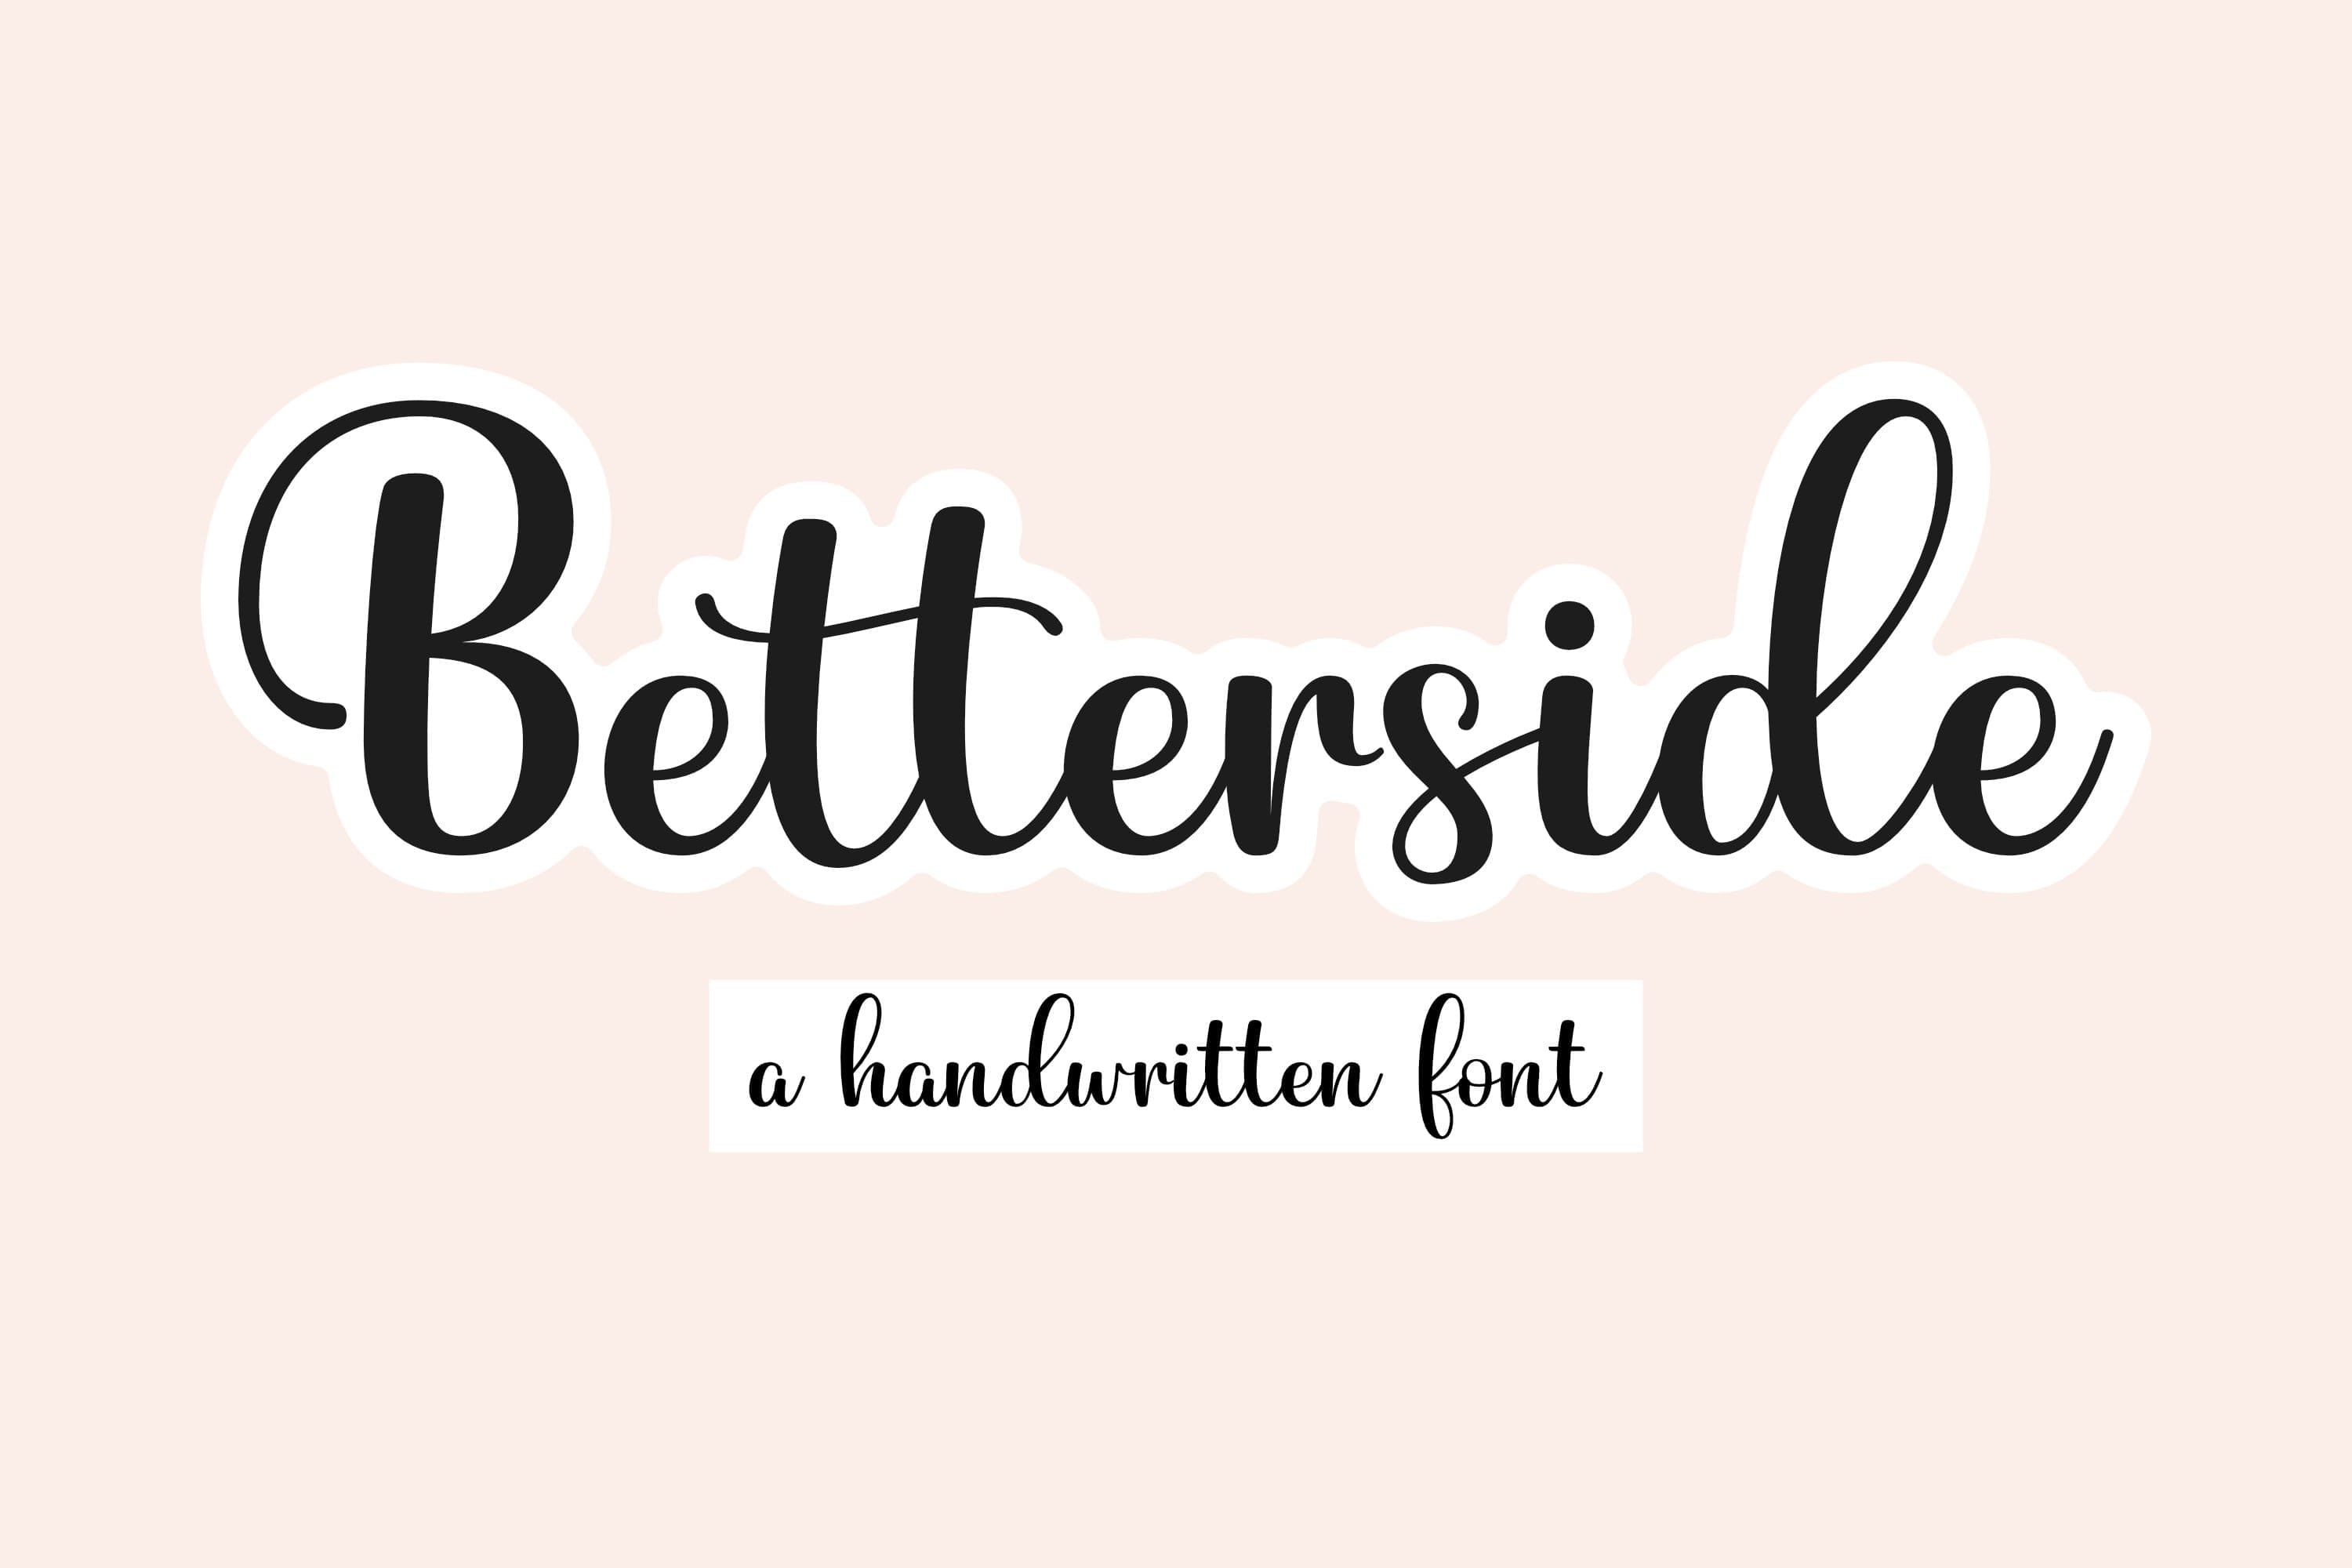 Betterside, a handwritten font, first picture 3000x2000.